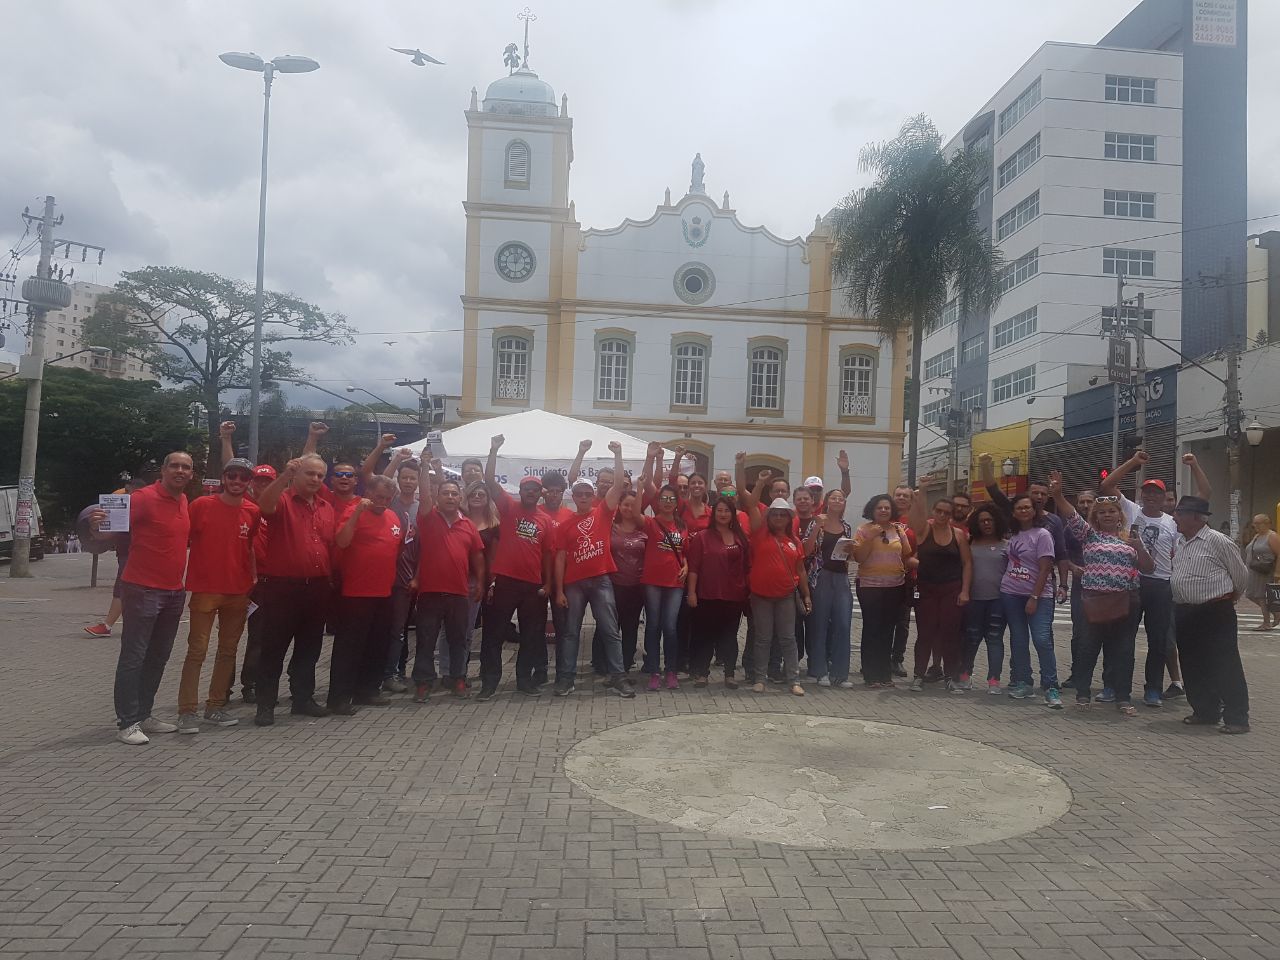 STAP - Sindicato dos Trab. da Adm. Pública Municipal de Guarulhos 